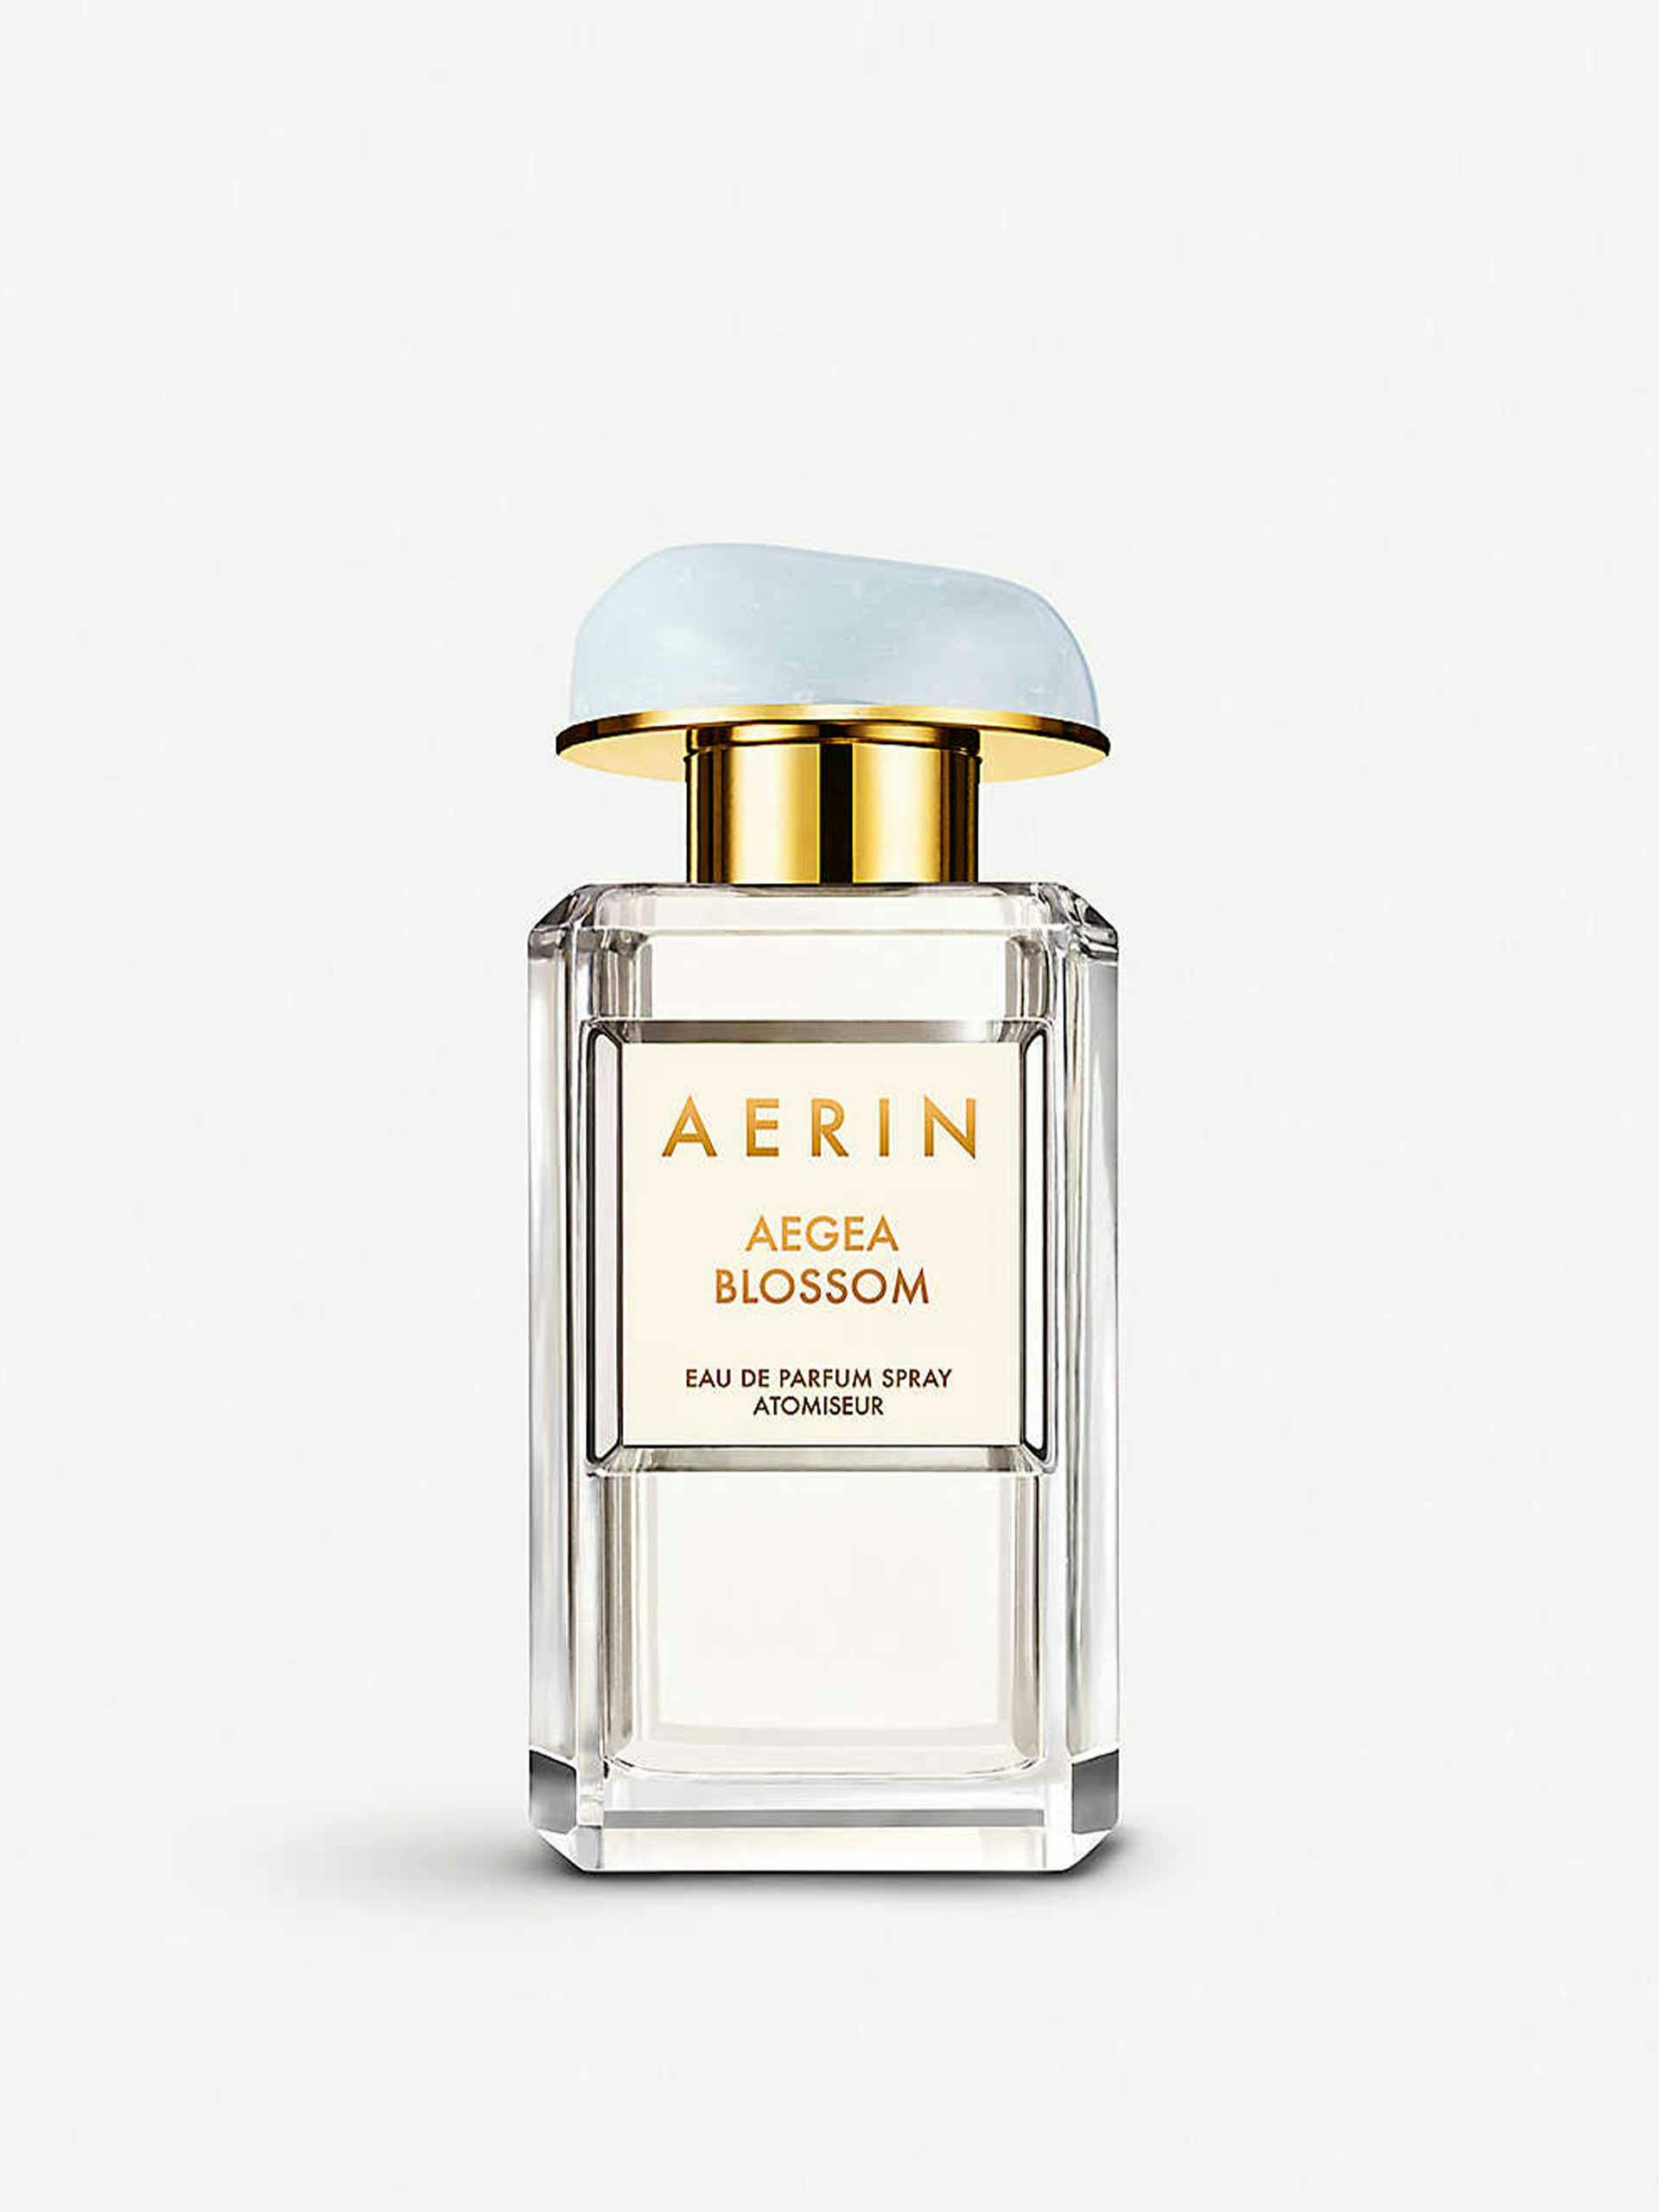 Agea Blosson eau de parfum